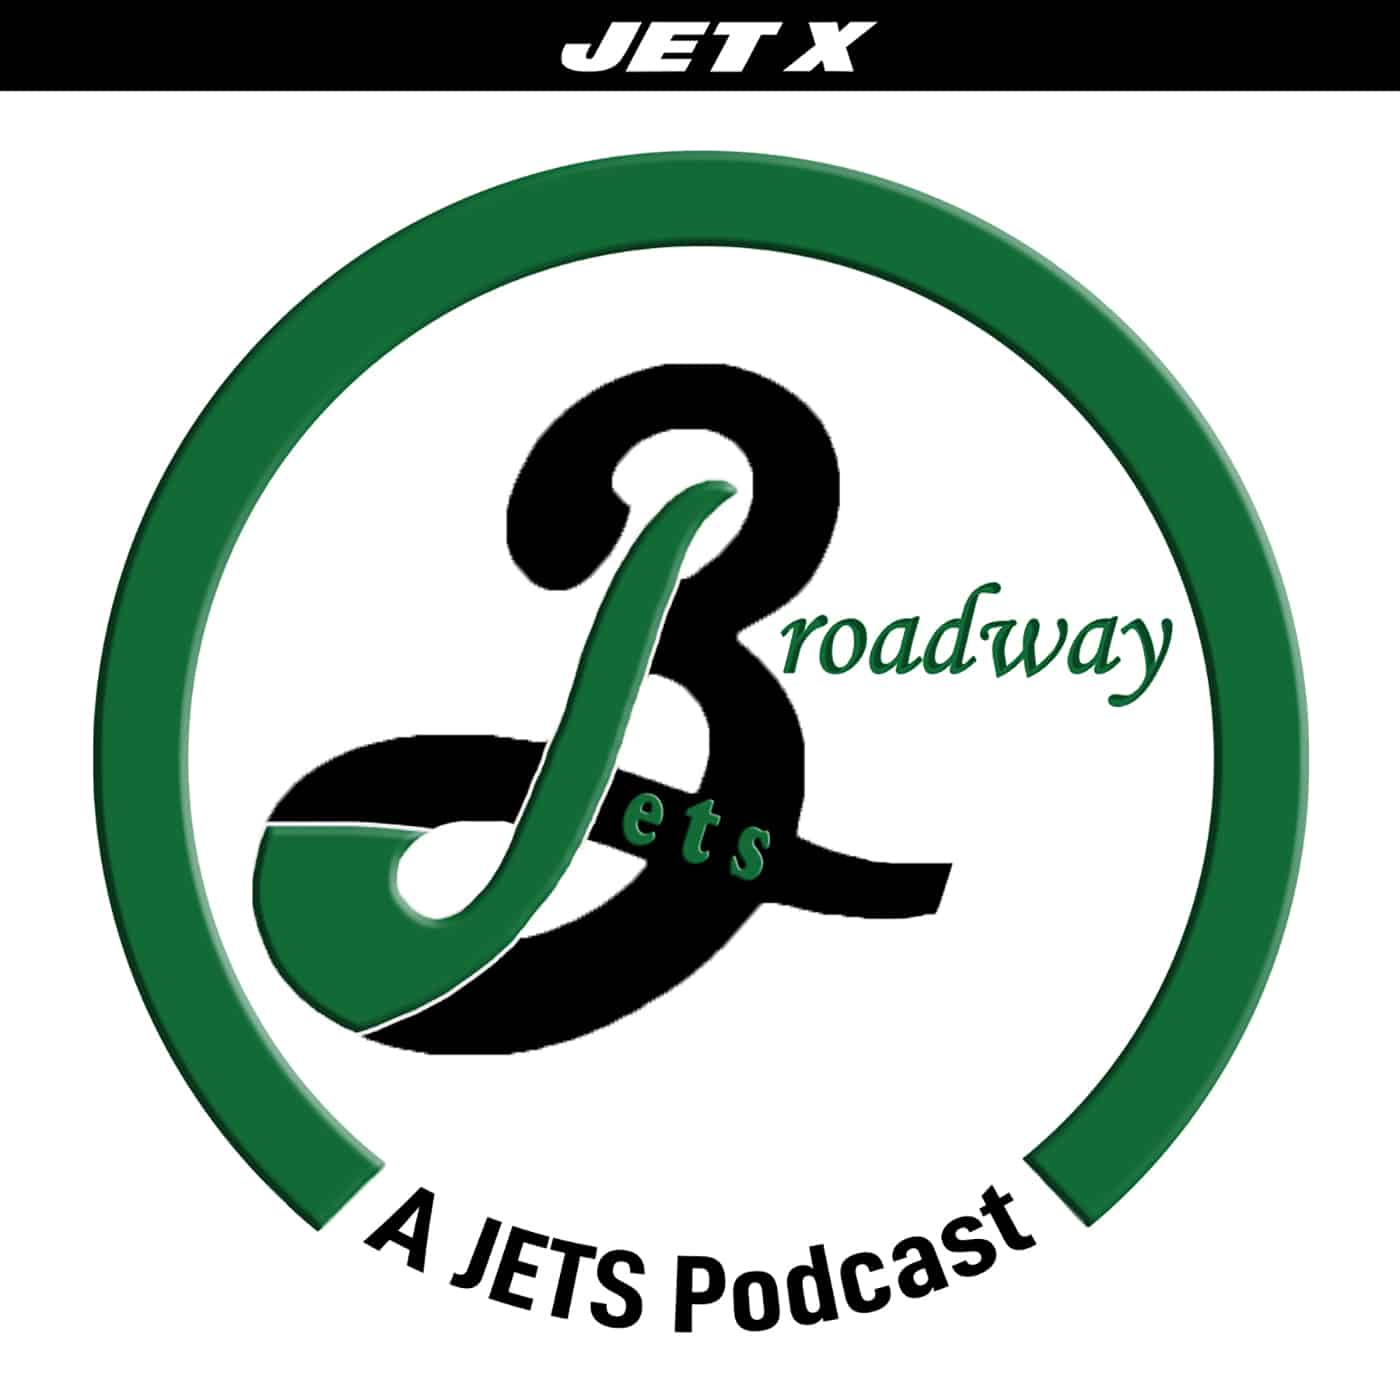 Broadway Jets Podcast